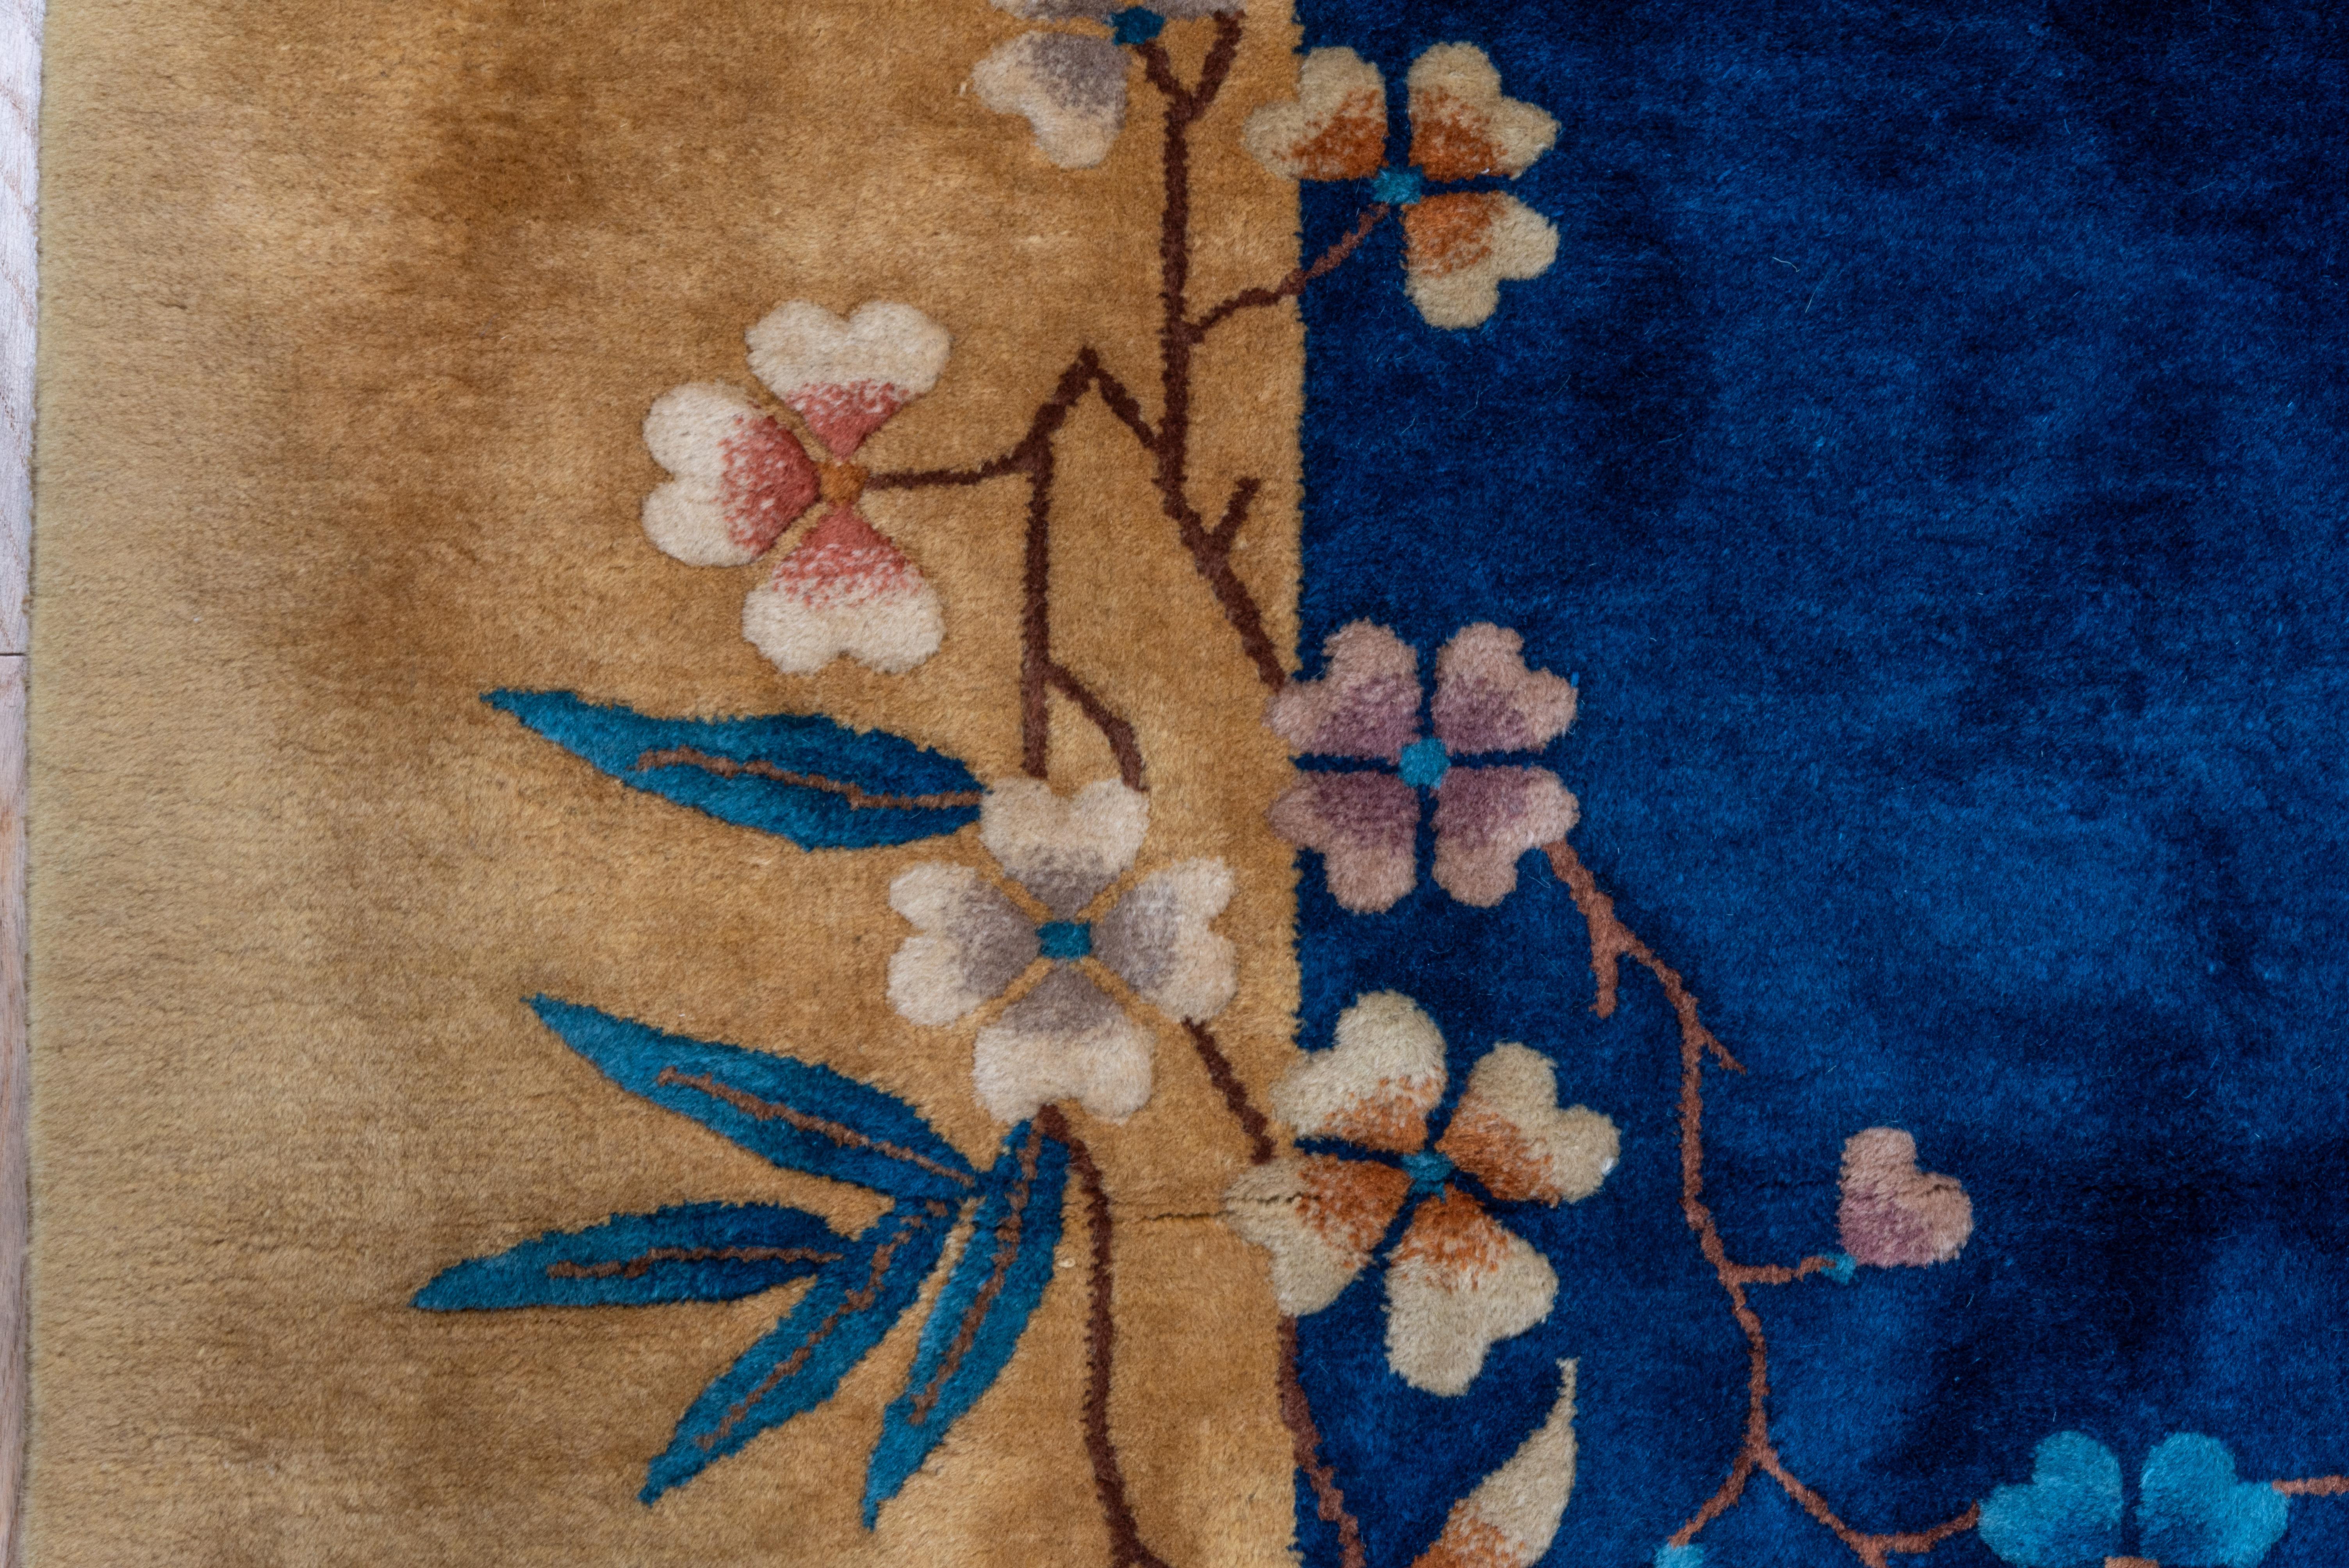 En voici un de taille peu commune, avec un motif asymétrique de gerbes florales qui relie le champ bleu foncé à la bordure de paille. Chaque tige présente un mélange de fleurs et de feuilles différentes, y compris des bambous dans un coin. De